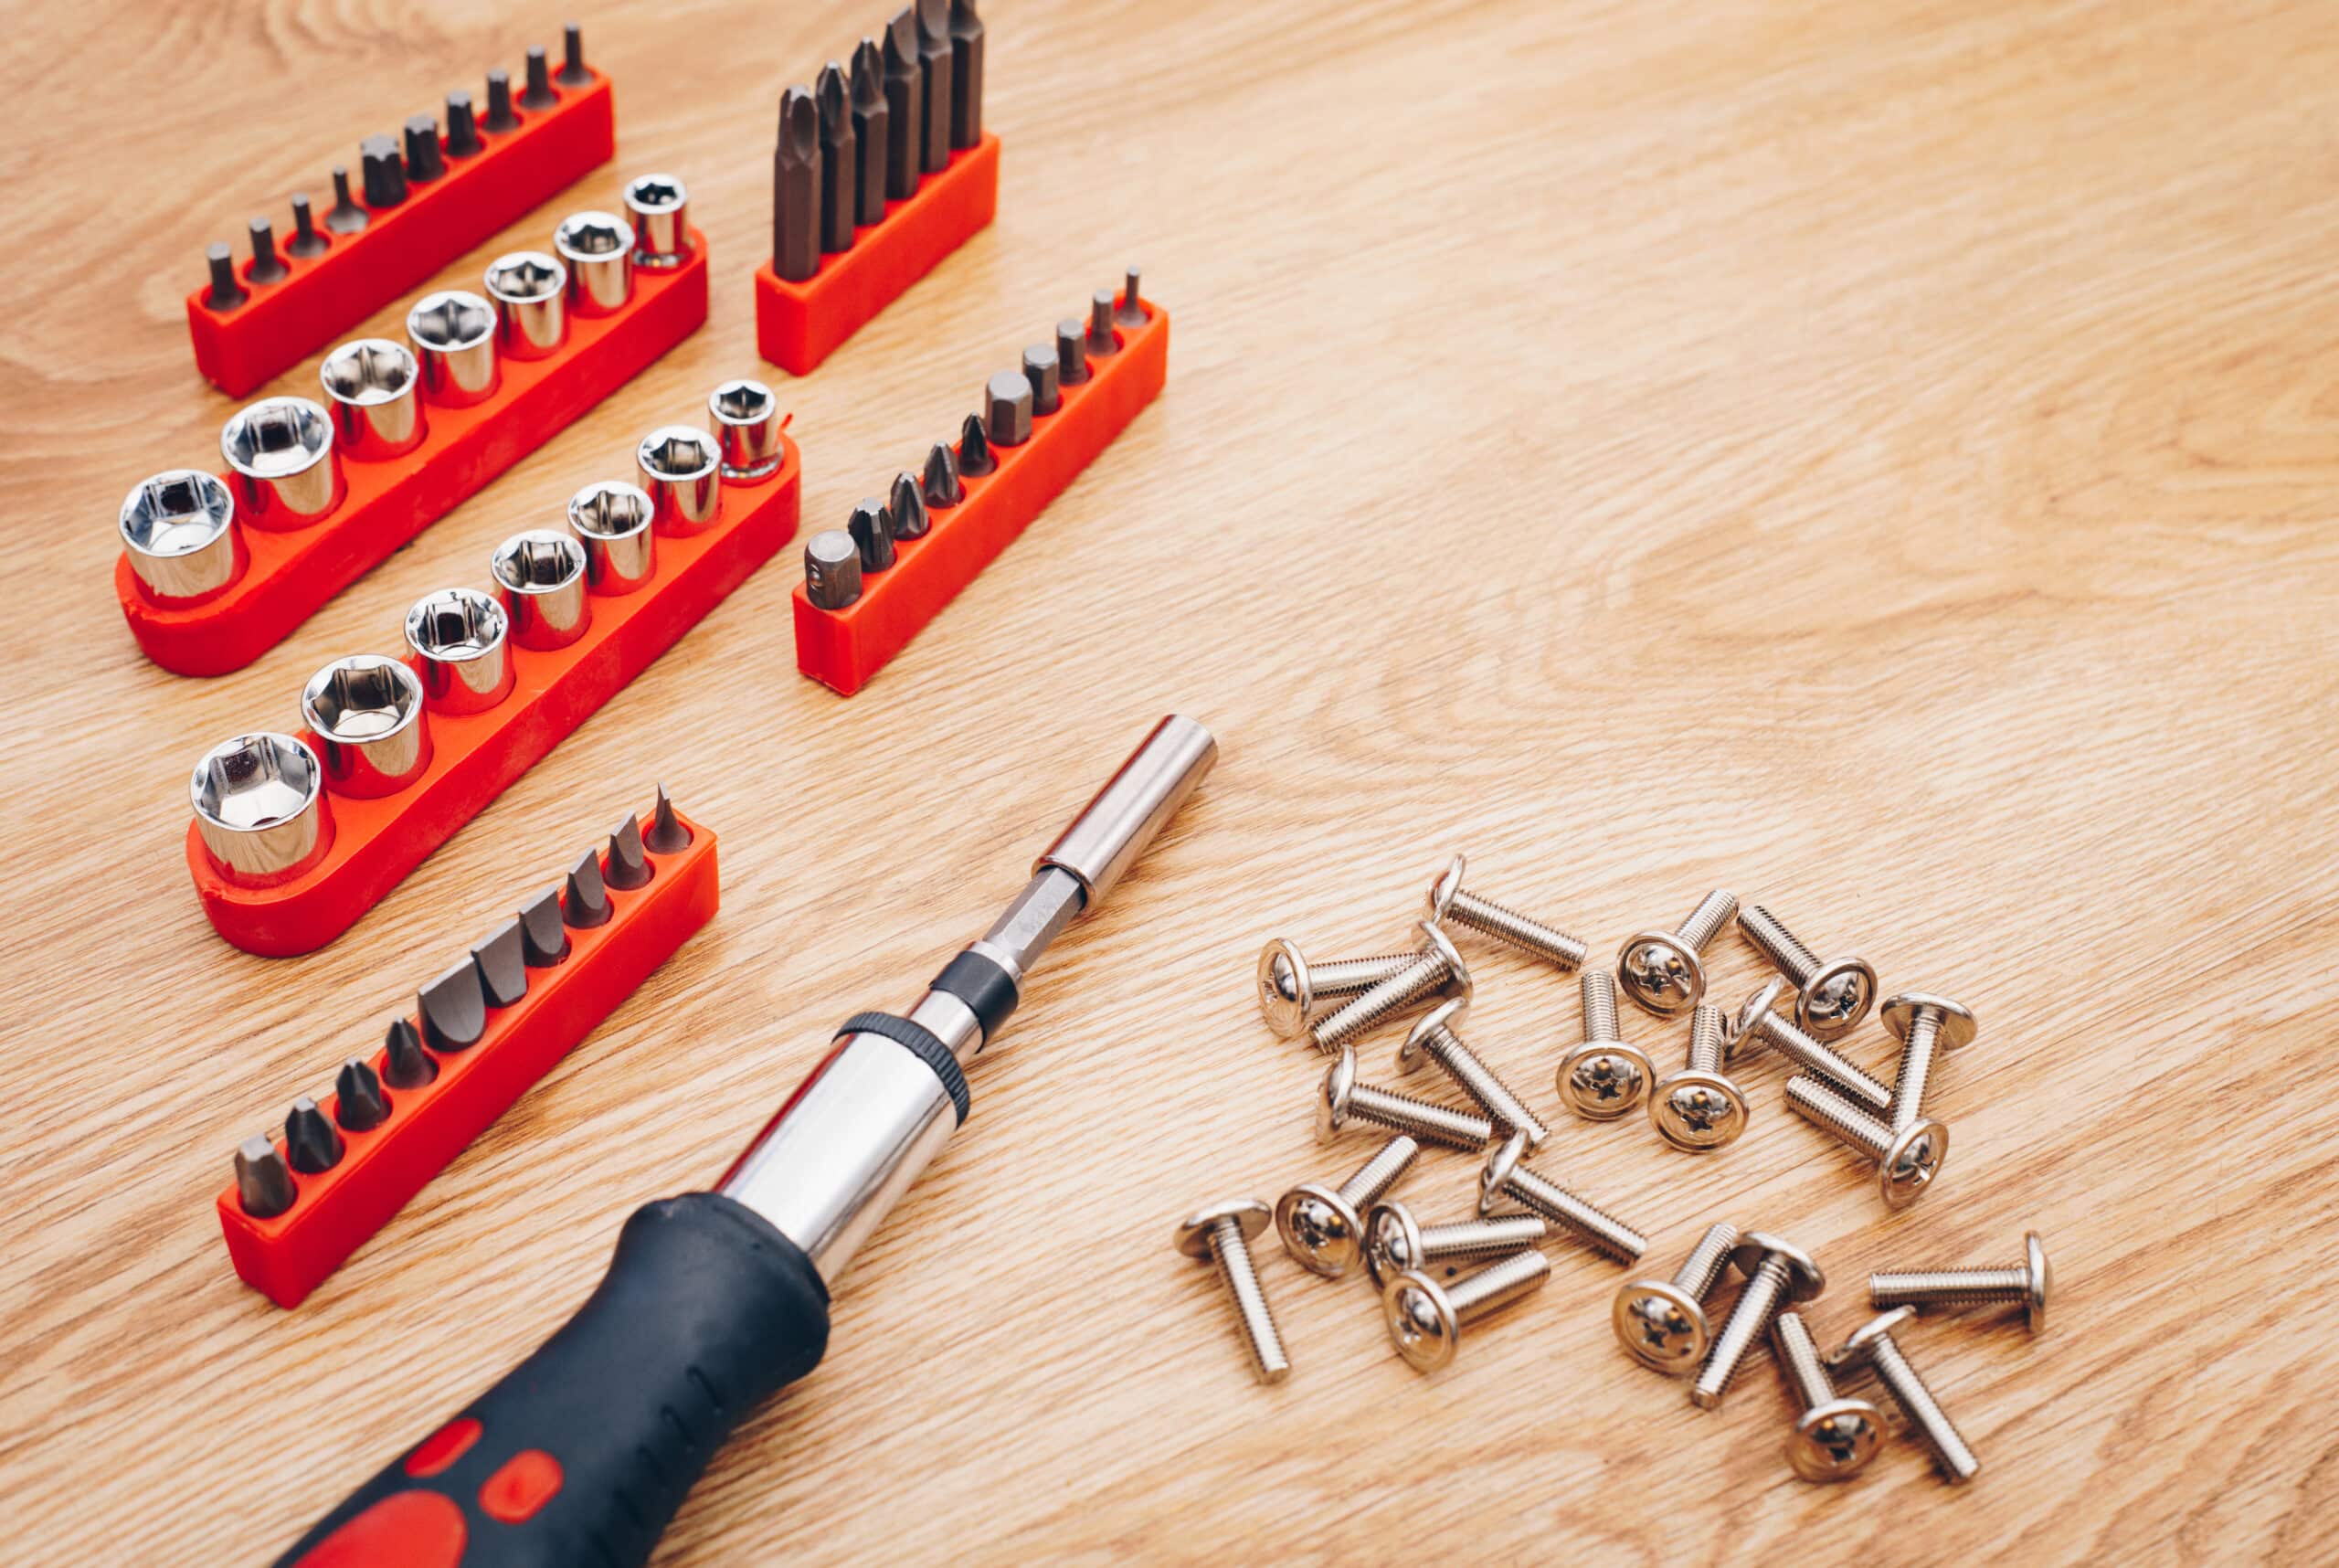 theprecisiontools.com : How to use a ratchet screwdriver effectively?